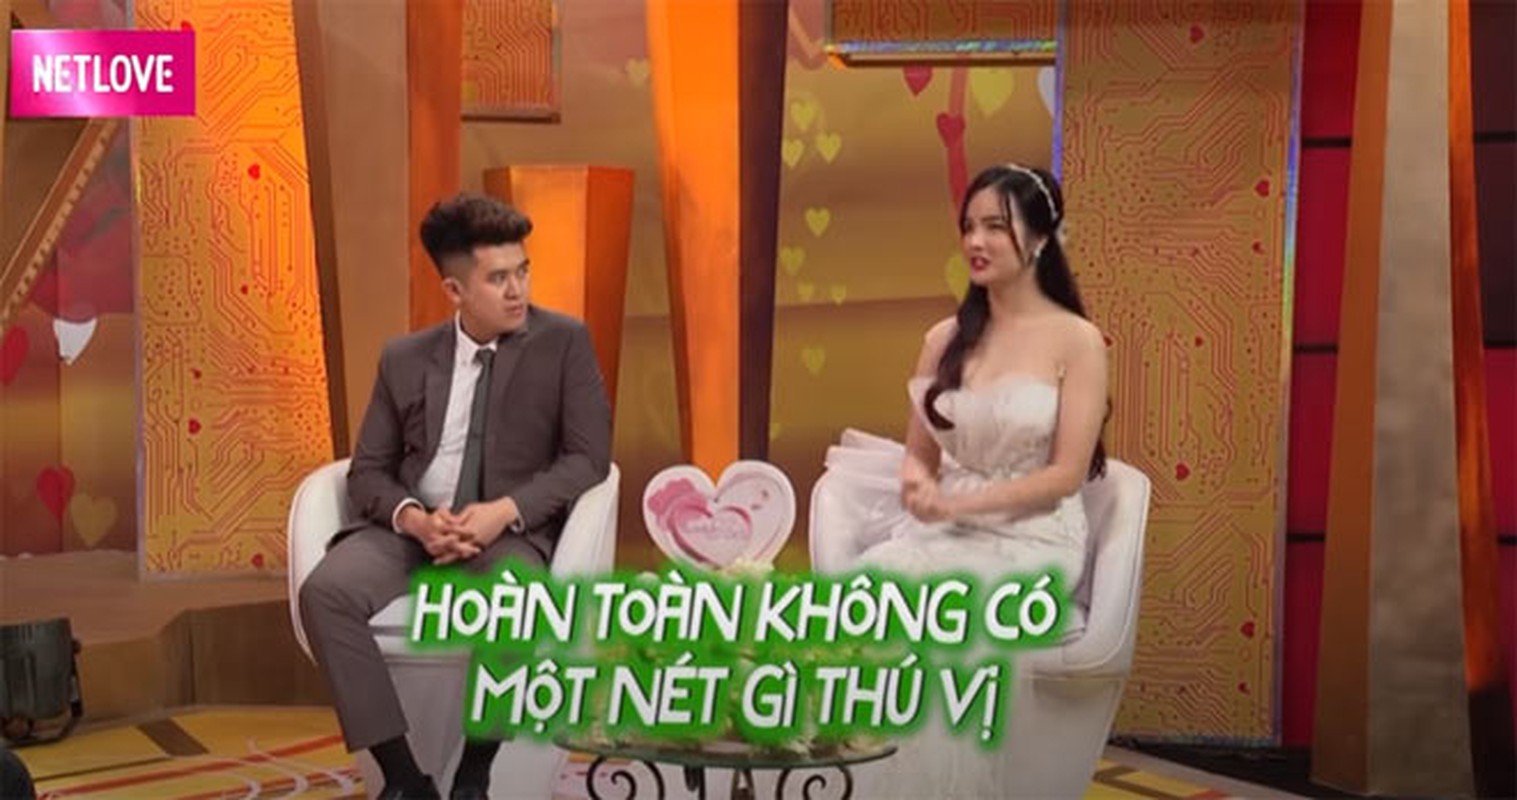 Nu CDV Viet Nam tung gay sot mang Han Quoc ke chuyen hon nhan-Hinh-4